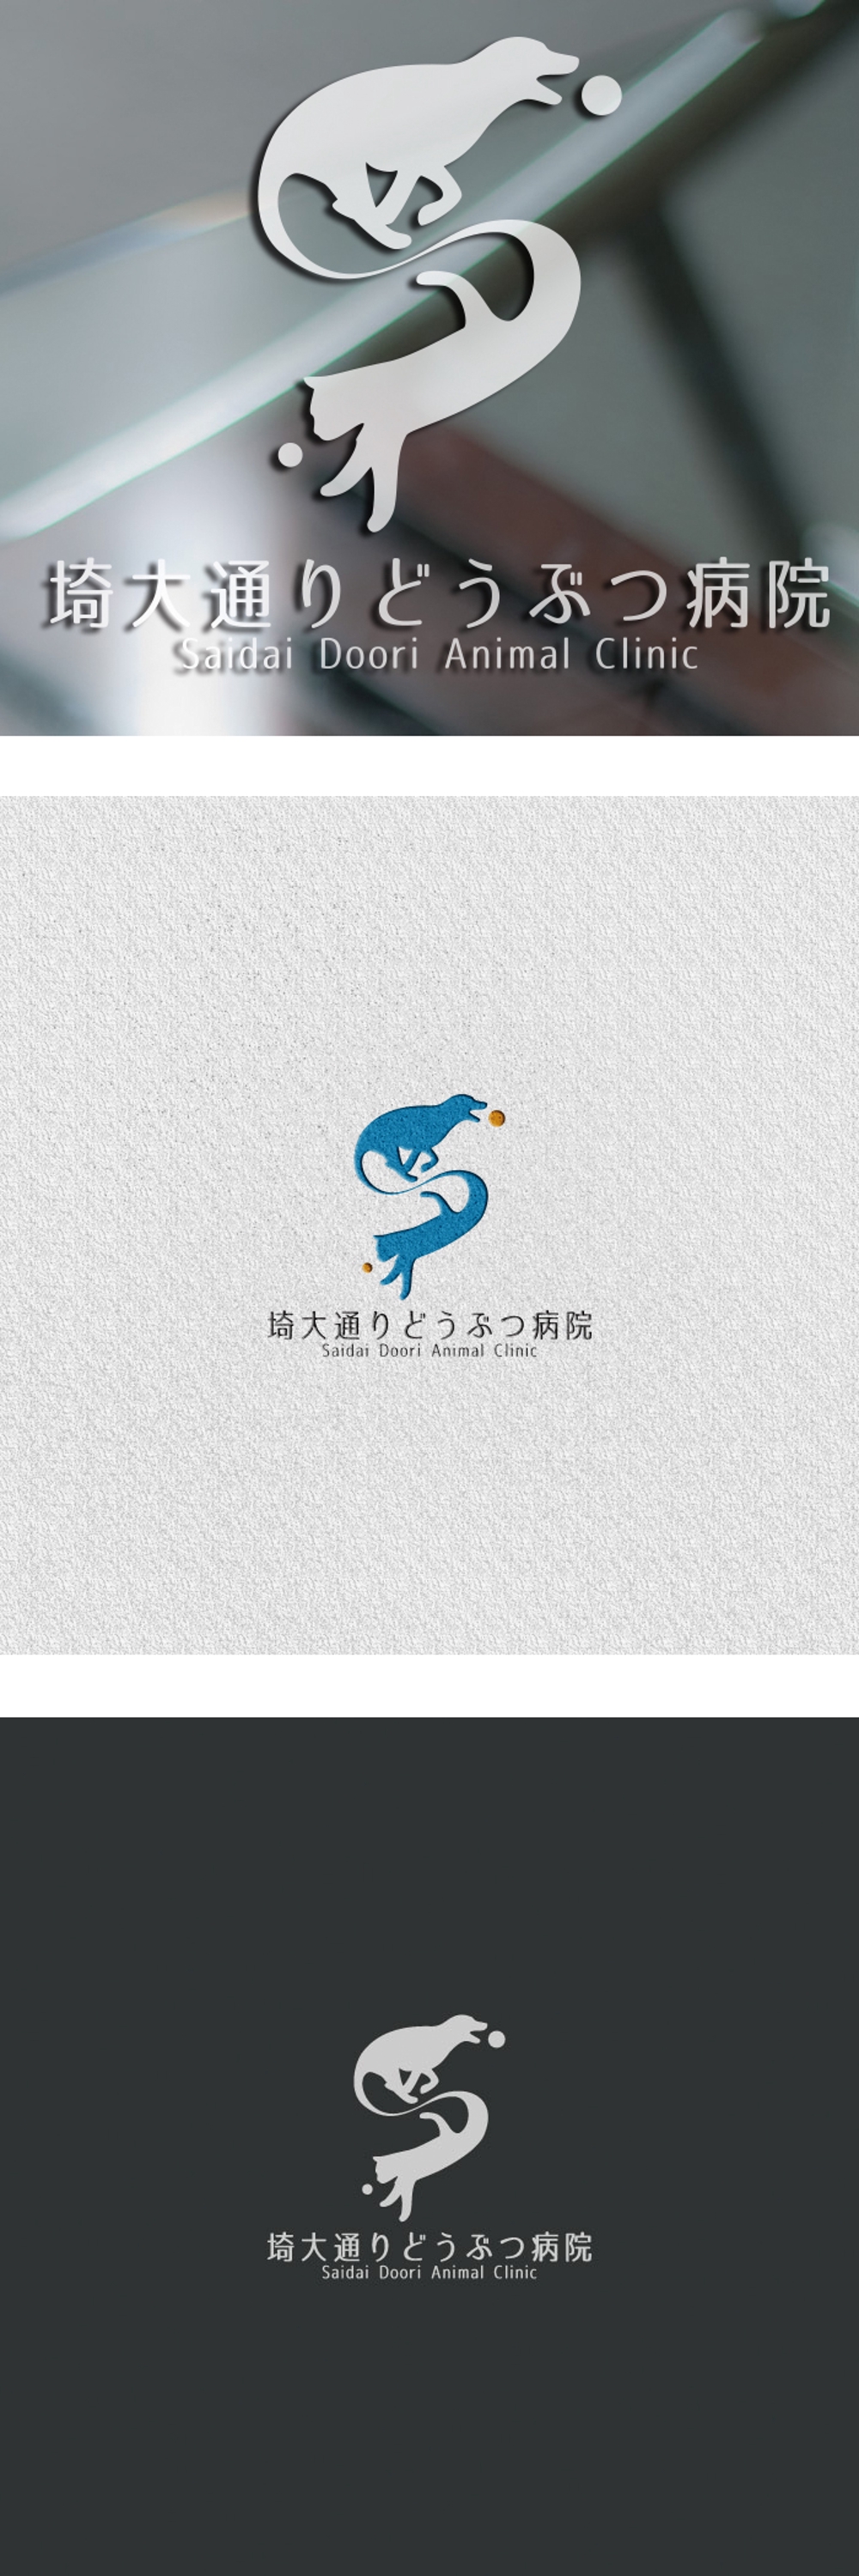 動物病院　「埼大通りどうぶつ病院」のロゴ